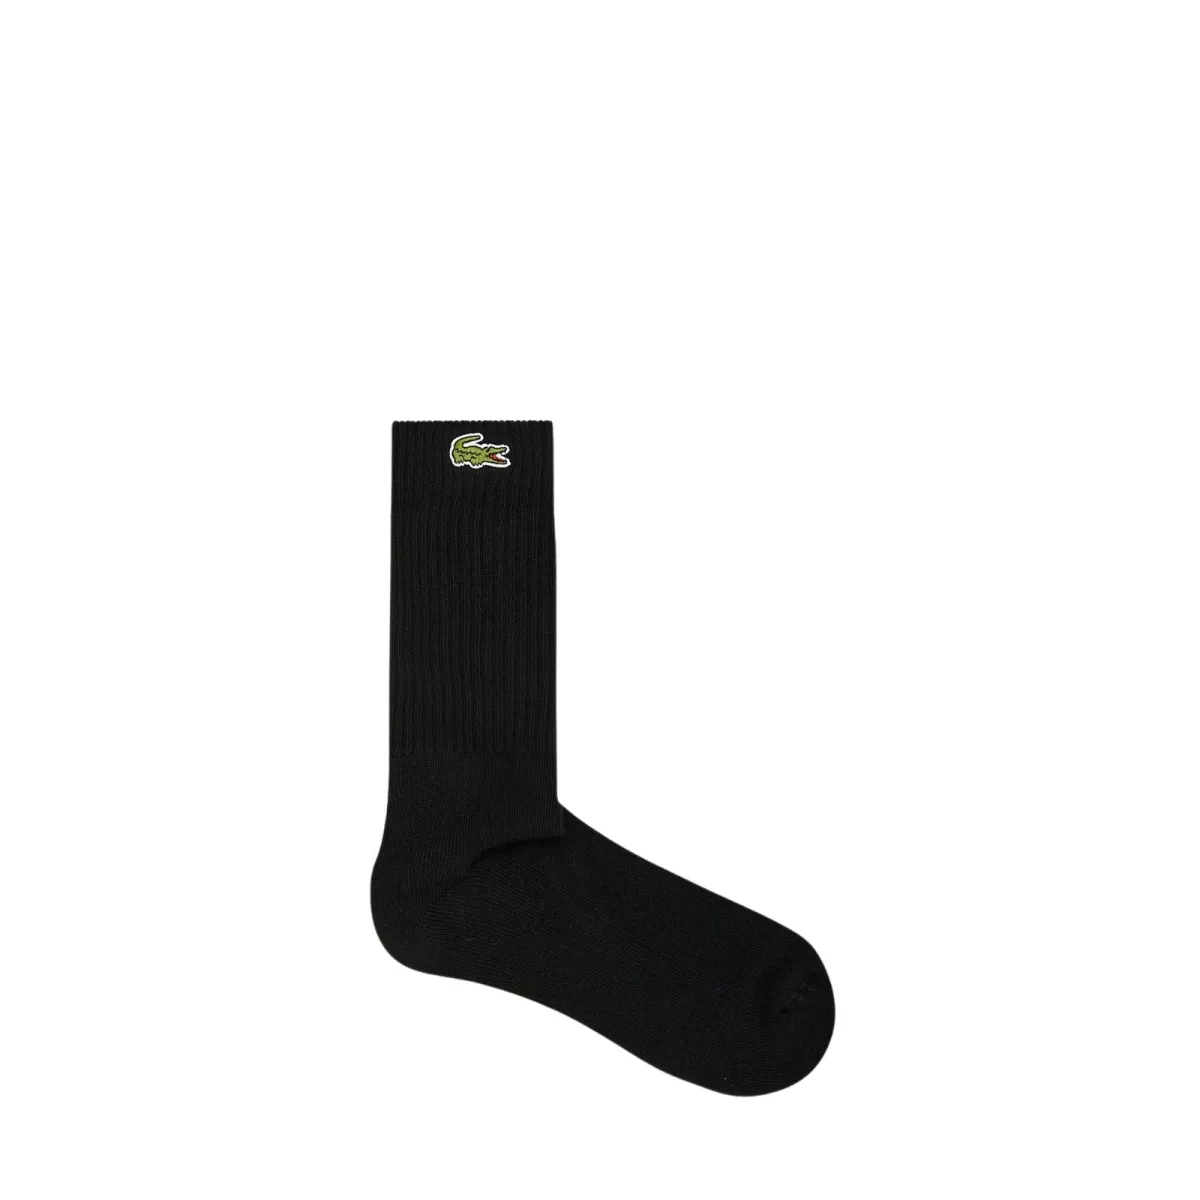 #1 - Lacoste Sport High-Cut Stretch Socks 1-pack Black